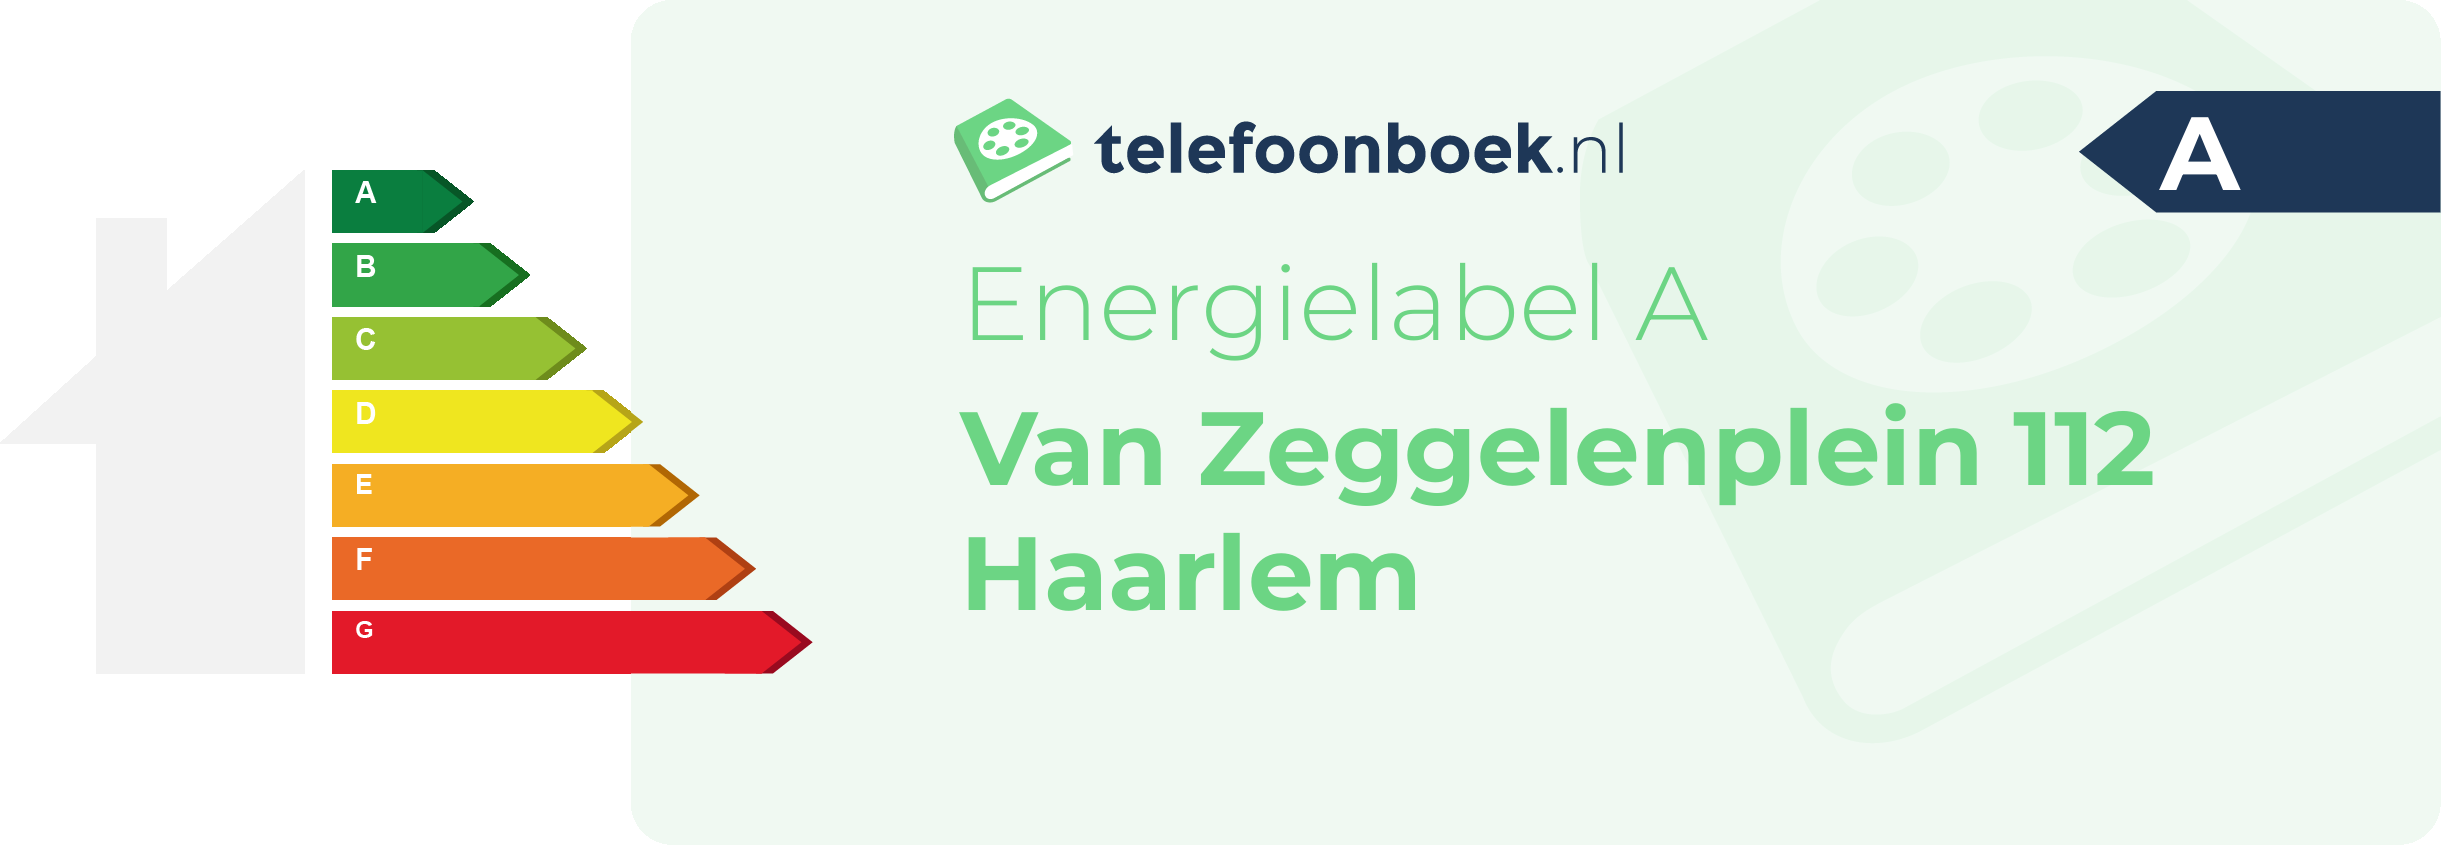 Energielabel Van Zeggelenplein 112 Haarlem